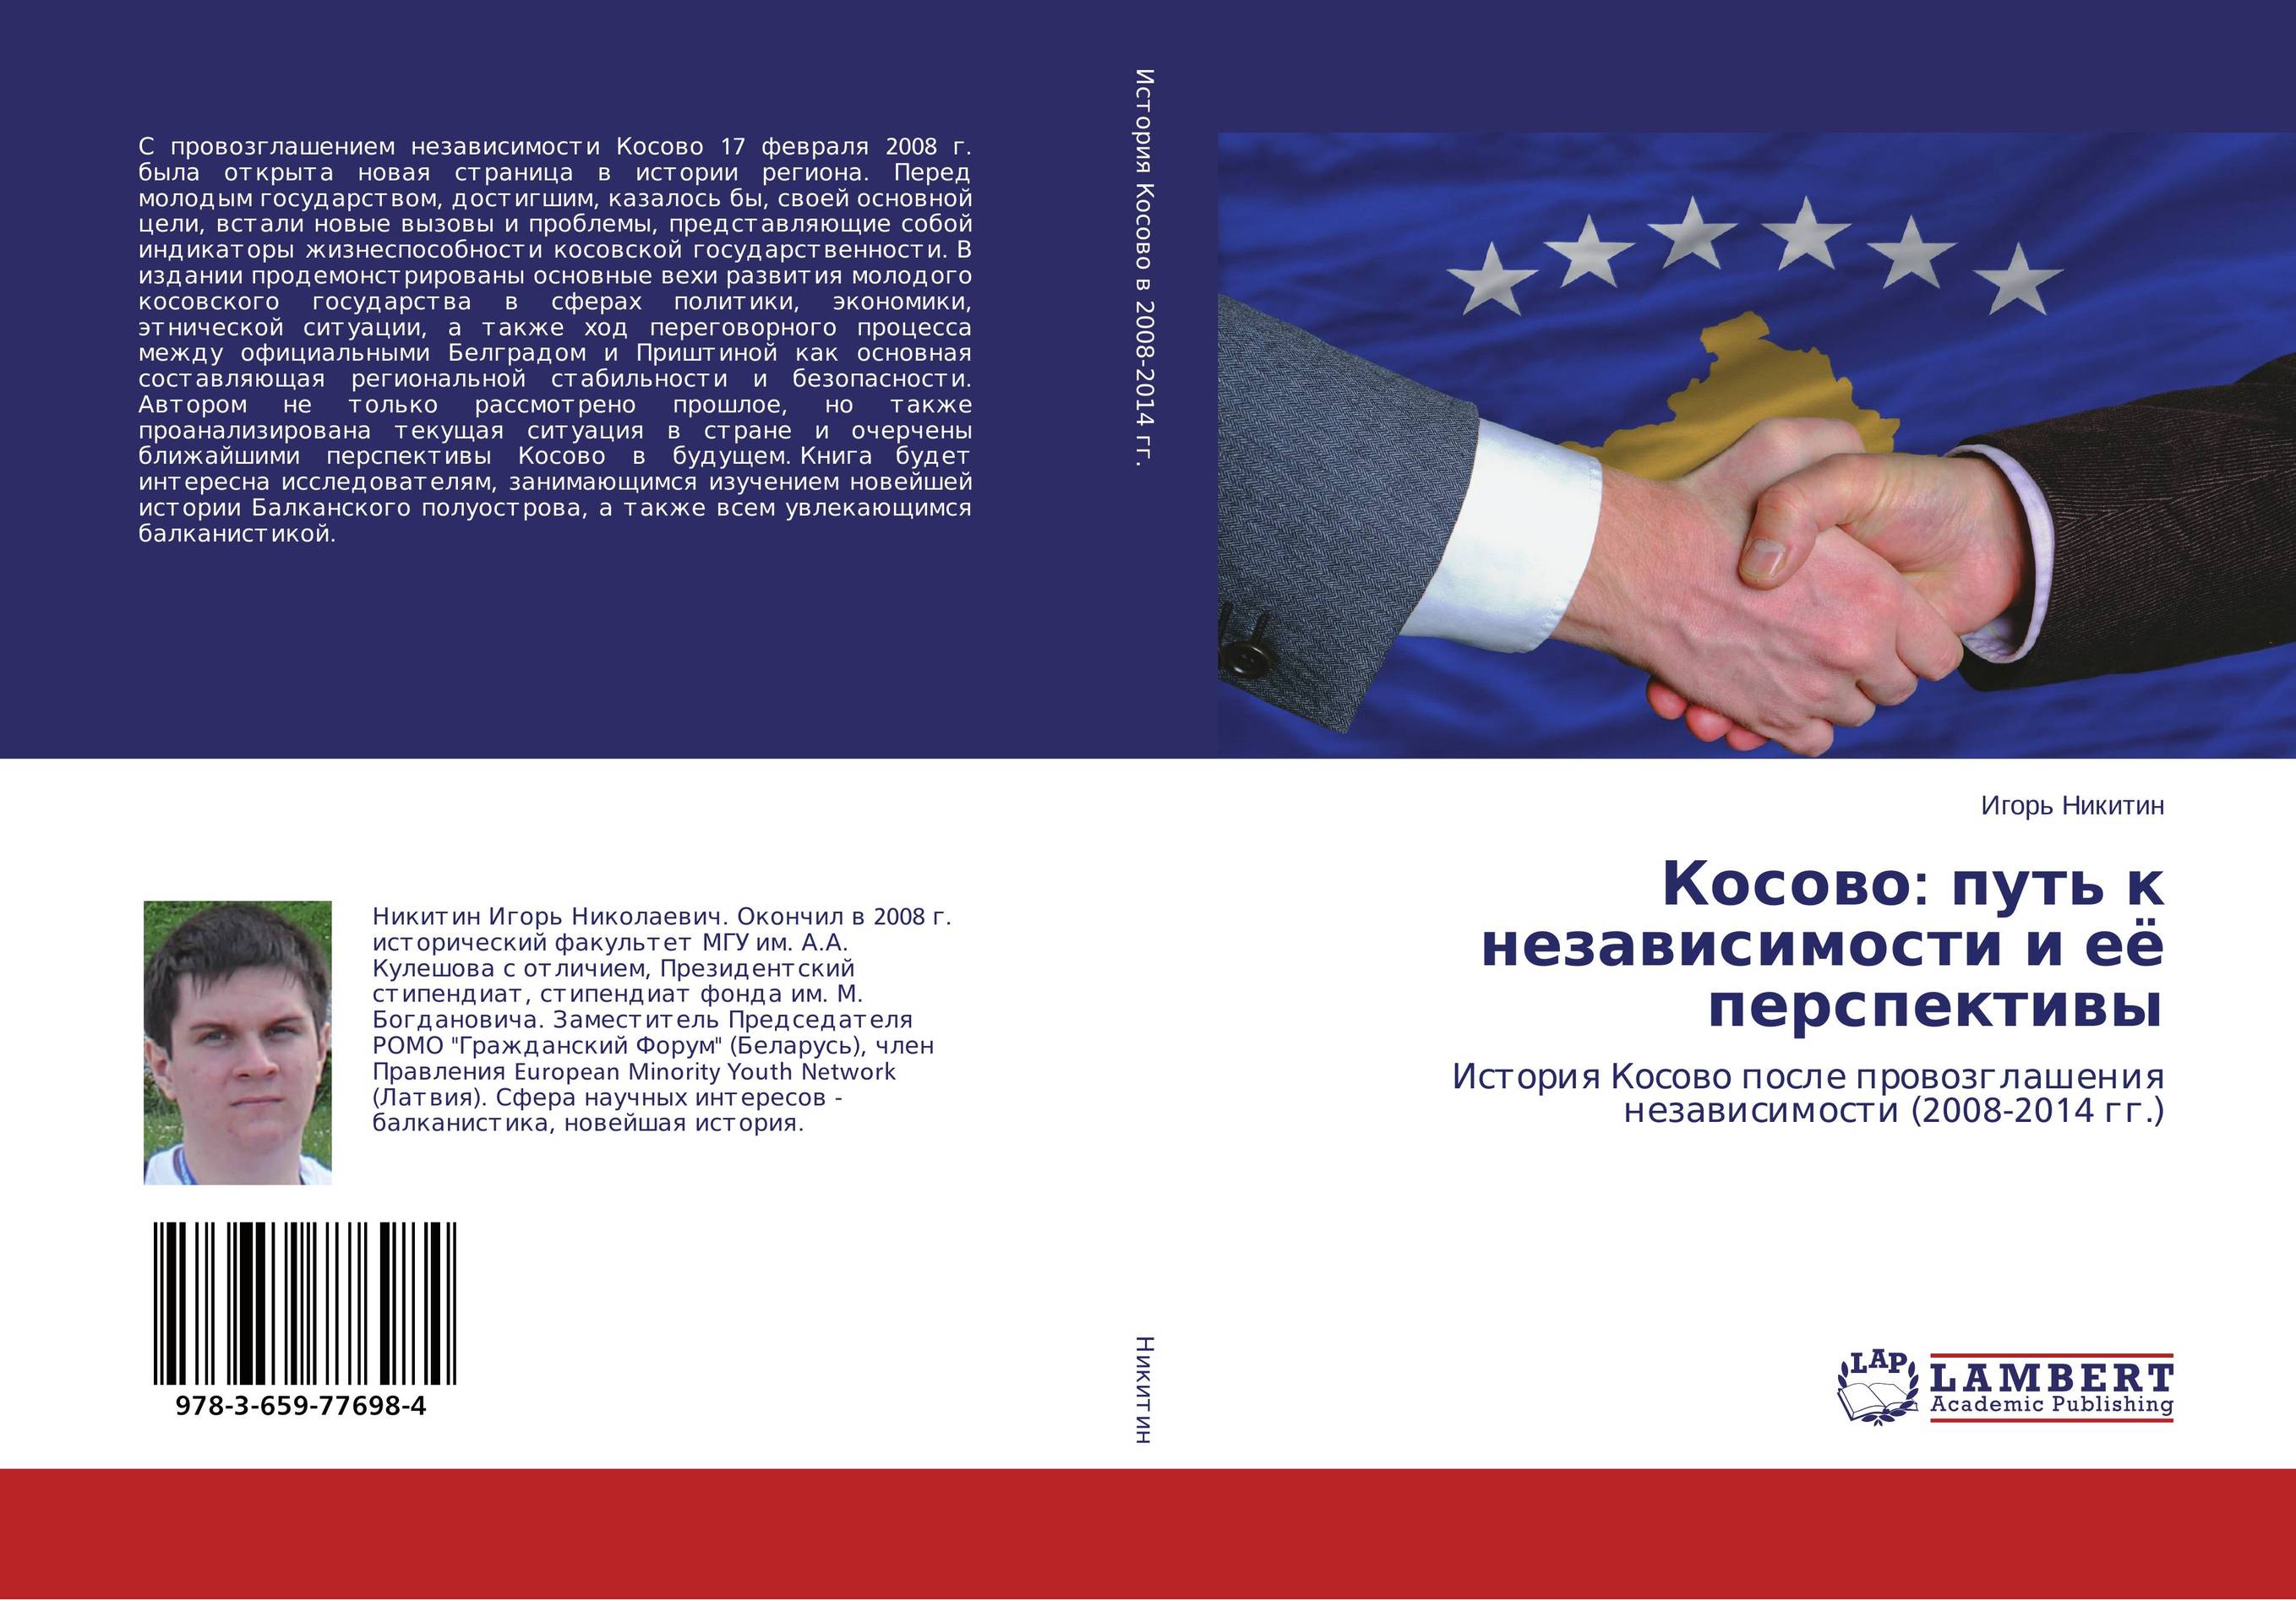 
        Косово: путь к независимости и её перспективы. История Косово после провозглашения независимости (2008-2014 гг.).
      